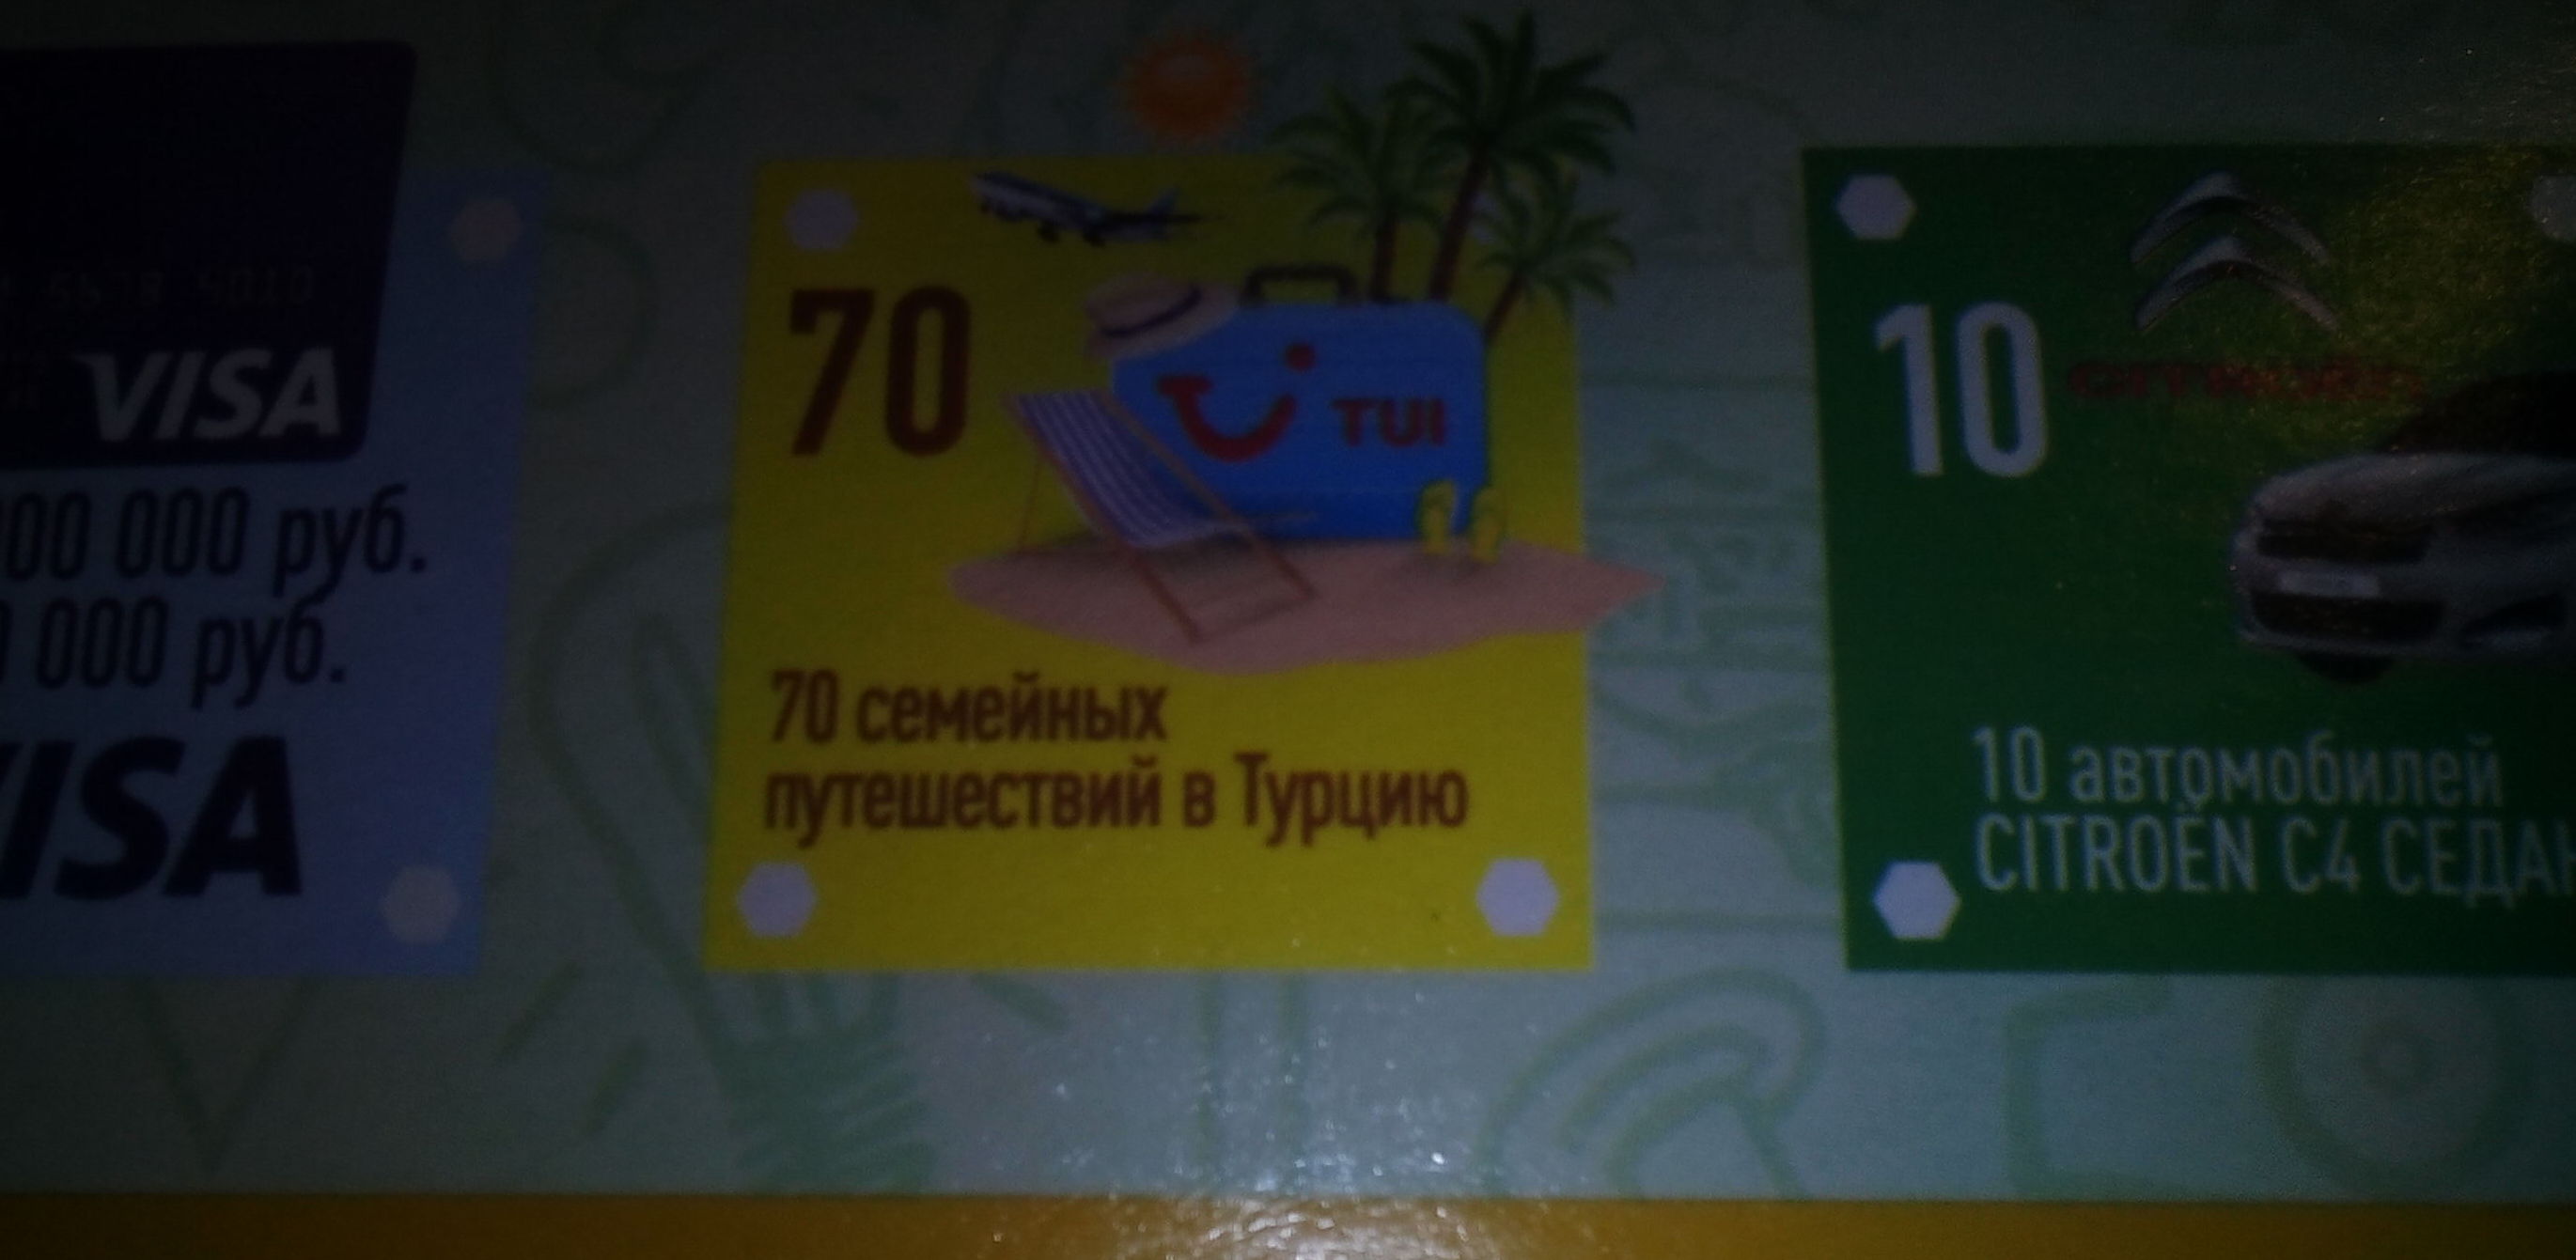 Сбитый Су-24? Нет, не слышали: в Екатеринбурге McDonald’s дарит путевки в Турцию поедателям «бик-маков»